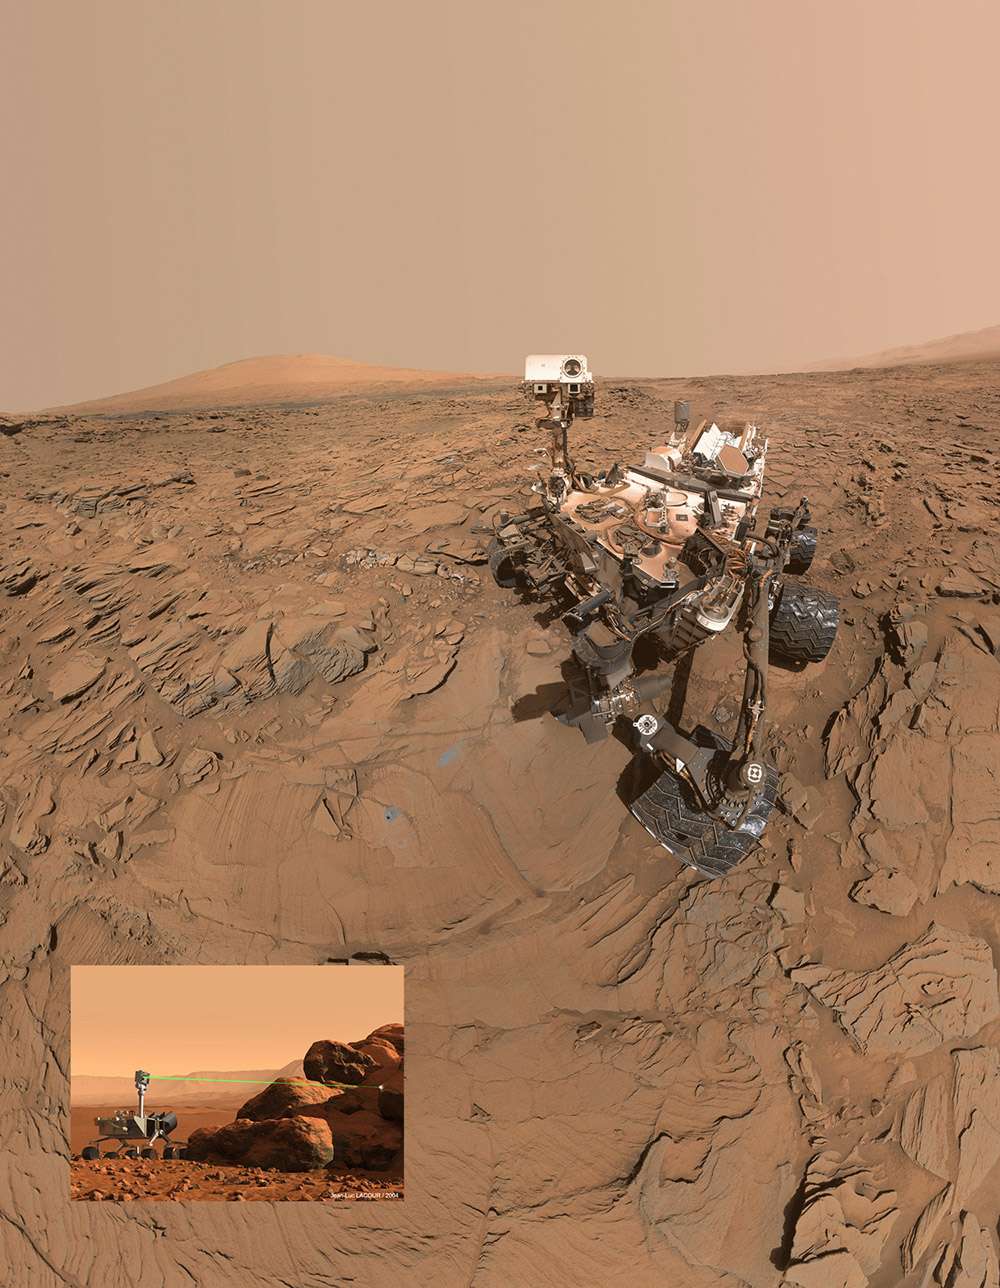  Sur Mars, le rover Curiosity utilise également un laser pour déterminer la composition élémentaire des roches. Ce laser, à bord de l’instrument Chemcam, a été fabriqué par le groupe français Thales, qui travaille actuellement sur un modèle amélioré pour le rover Mars 2020. Il s'agit du premier laser jamais envoyé sur une autre planète. © Nasa, JP et J.L. Labour pour la vue d'artiste